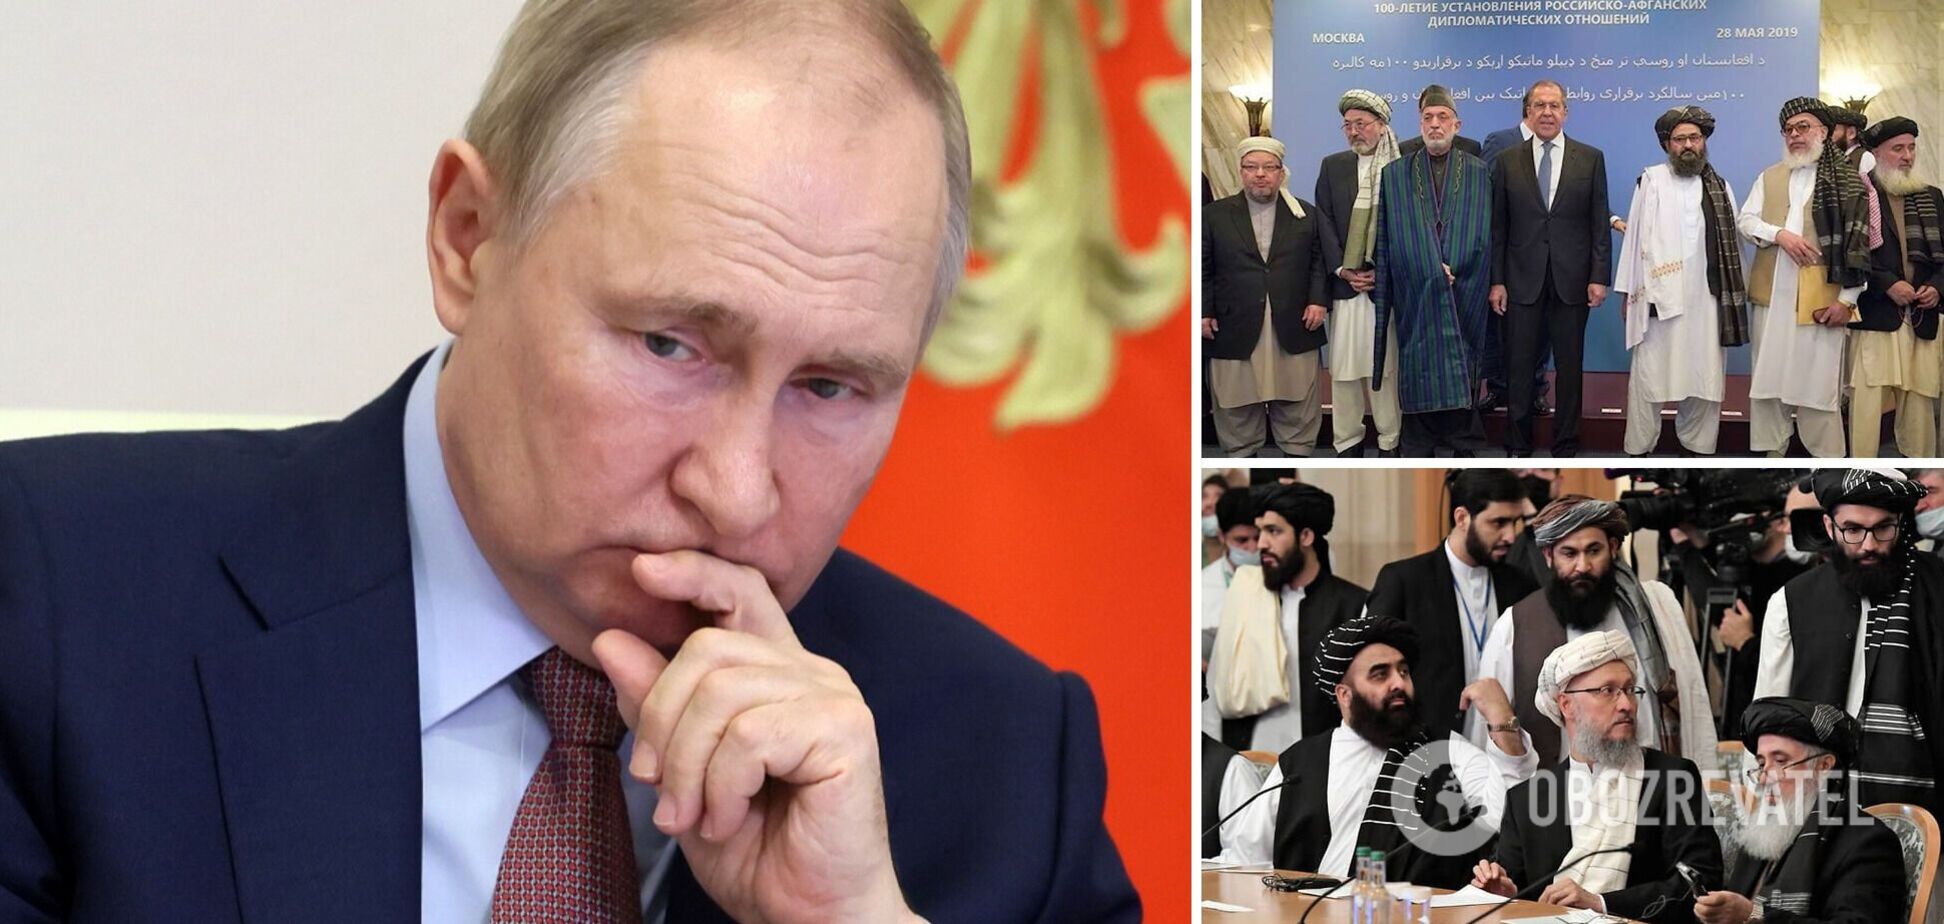 'Кокс закончился?' Кремль собрался говорить с 'Талибаном' о борьбе с терроризмом, идею жестко высмеяли в сети